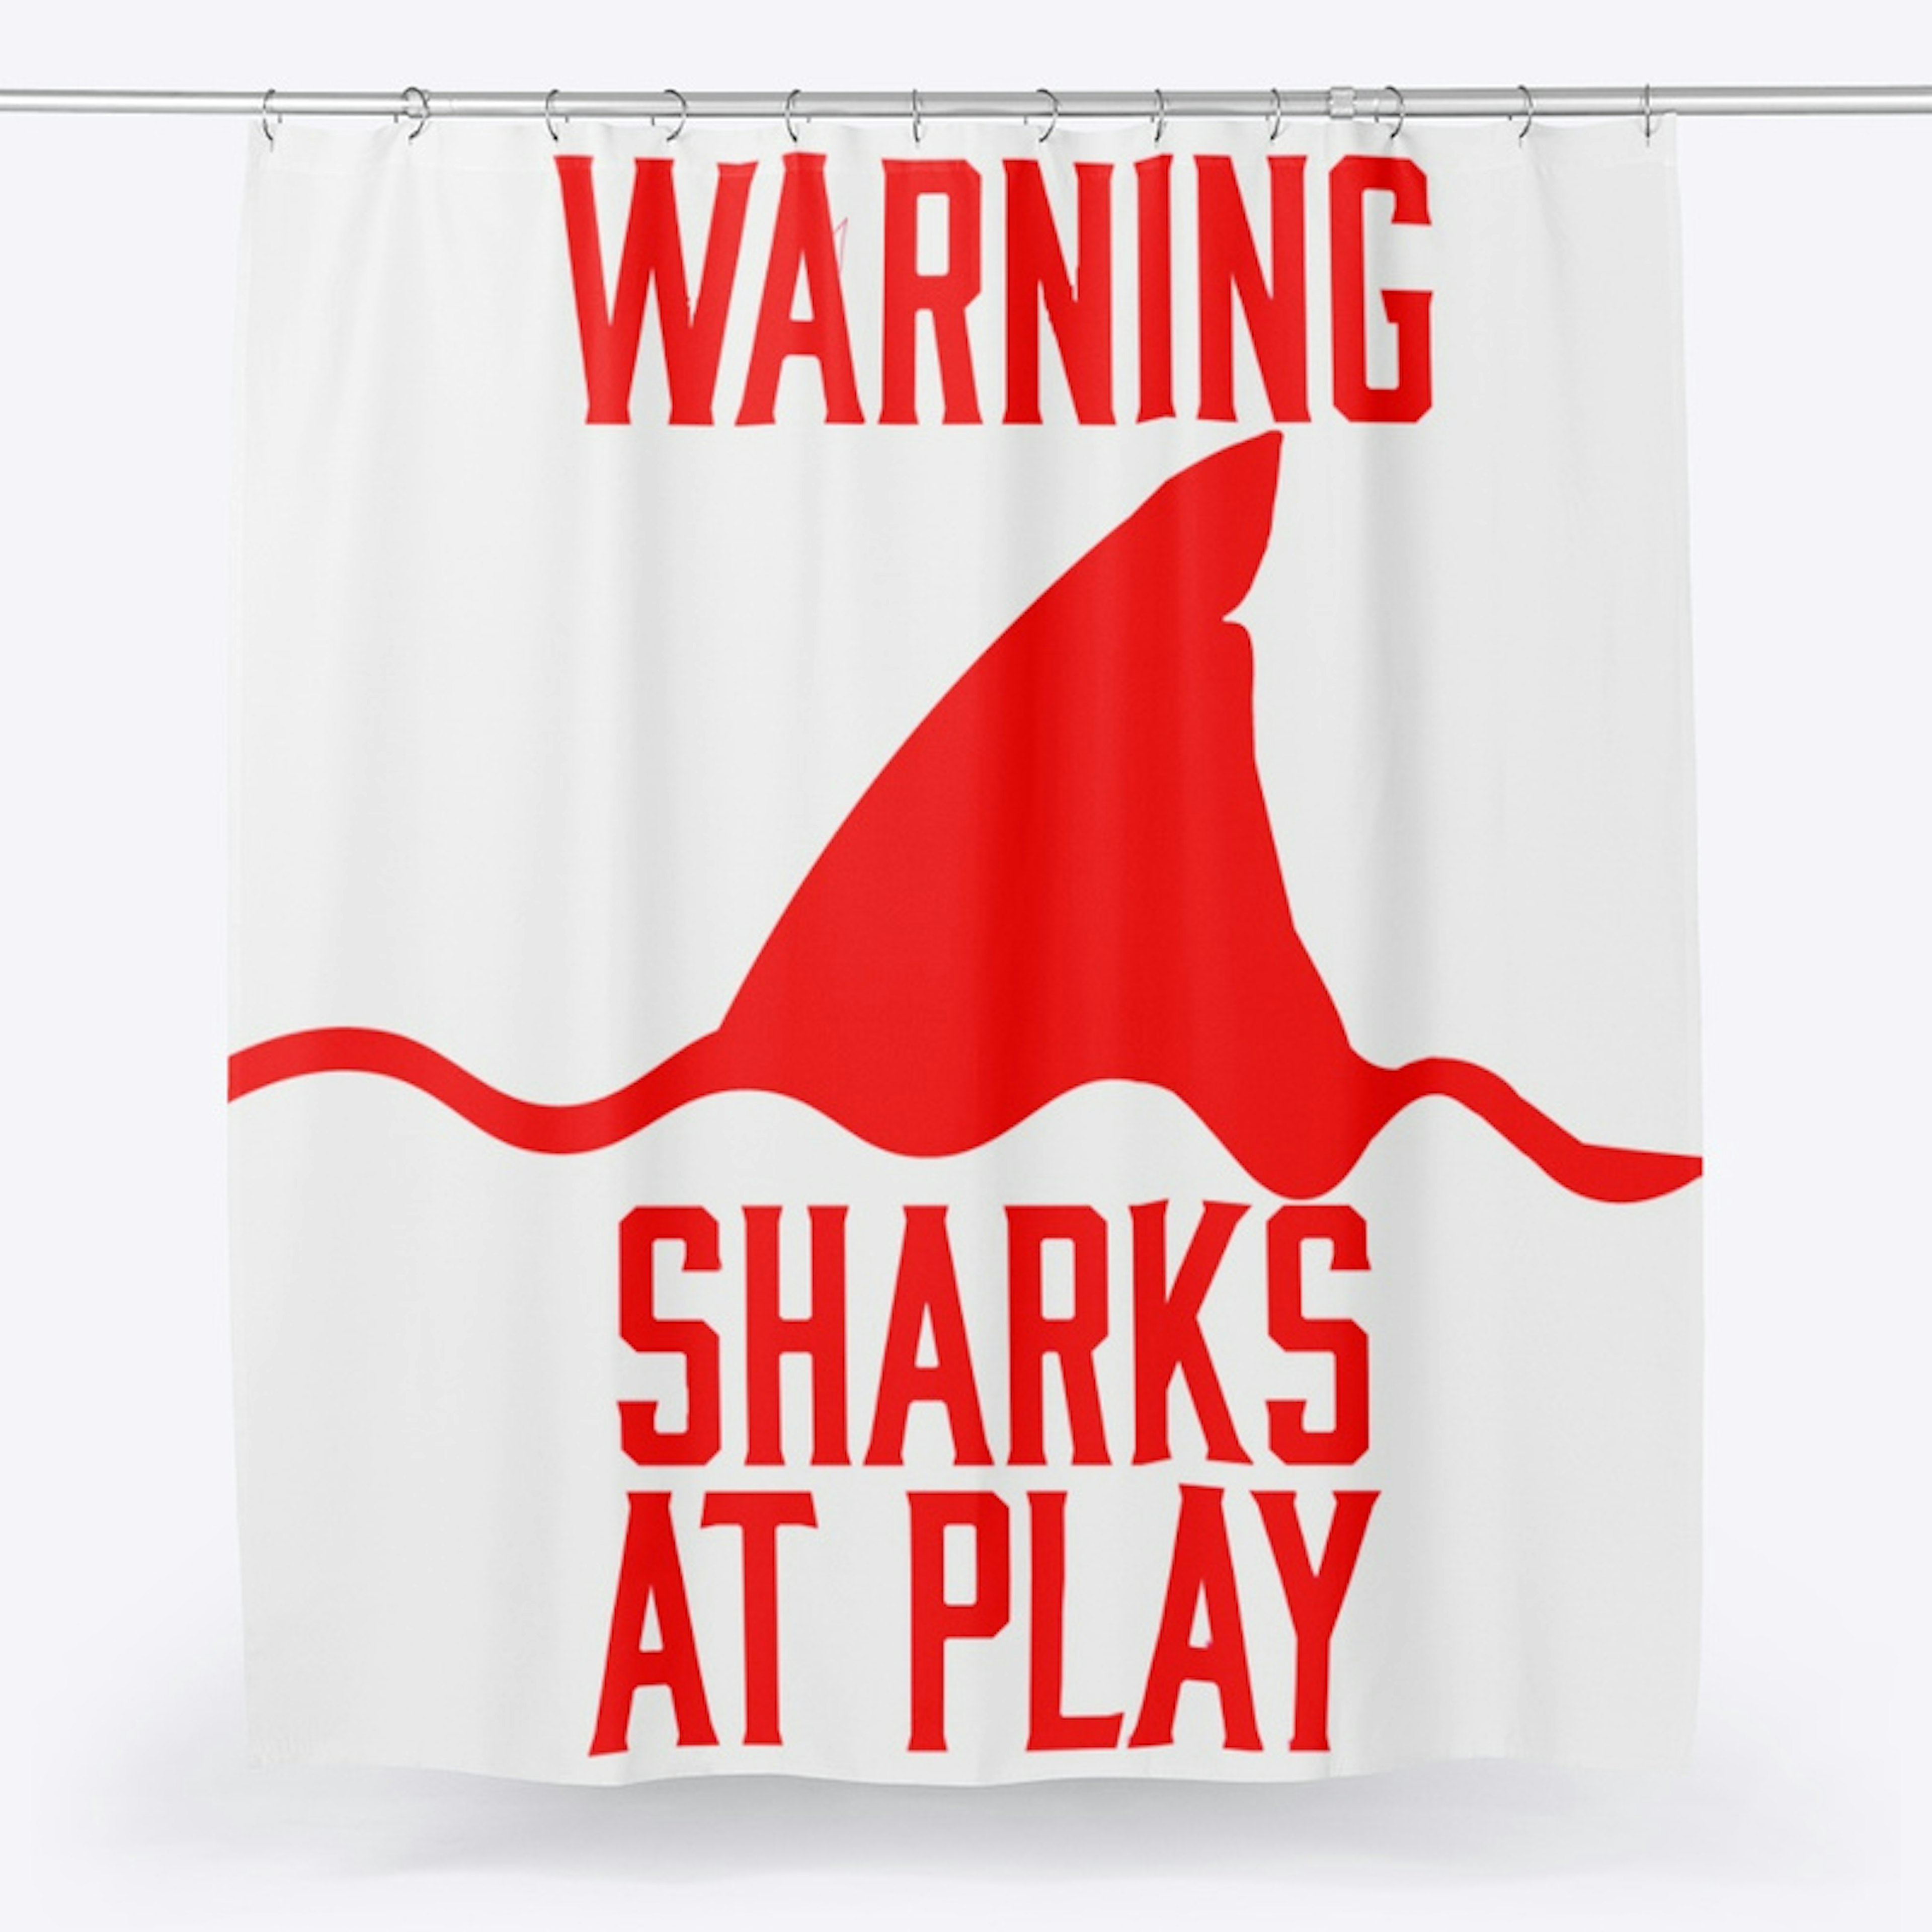 Sharks at play